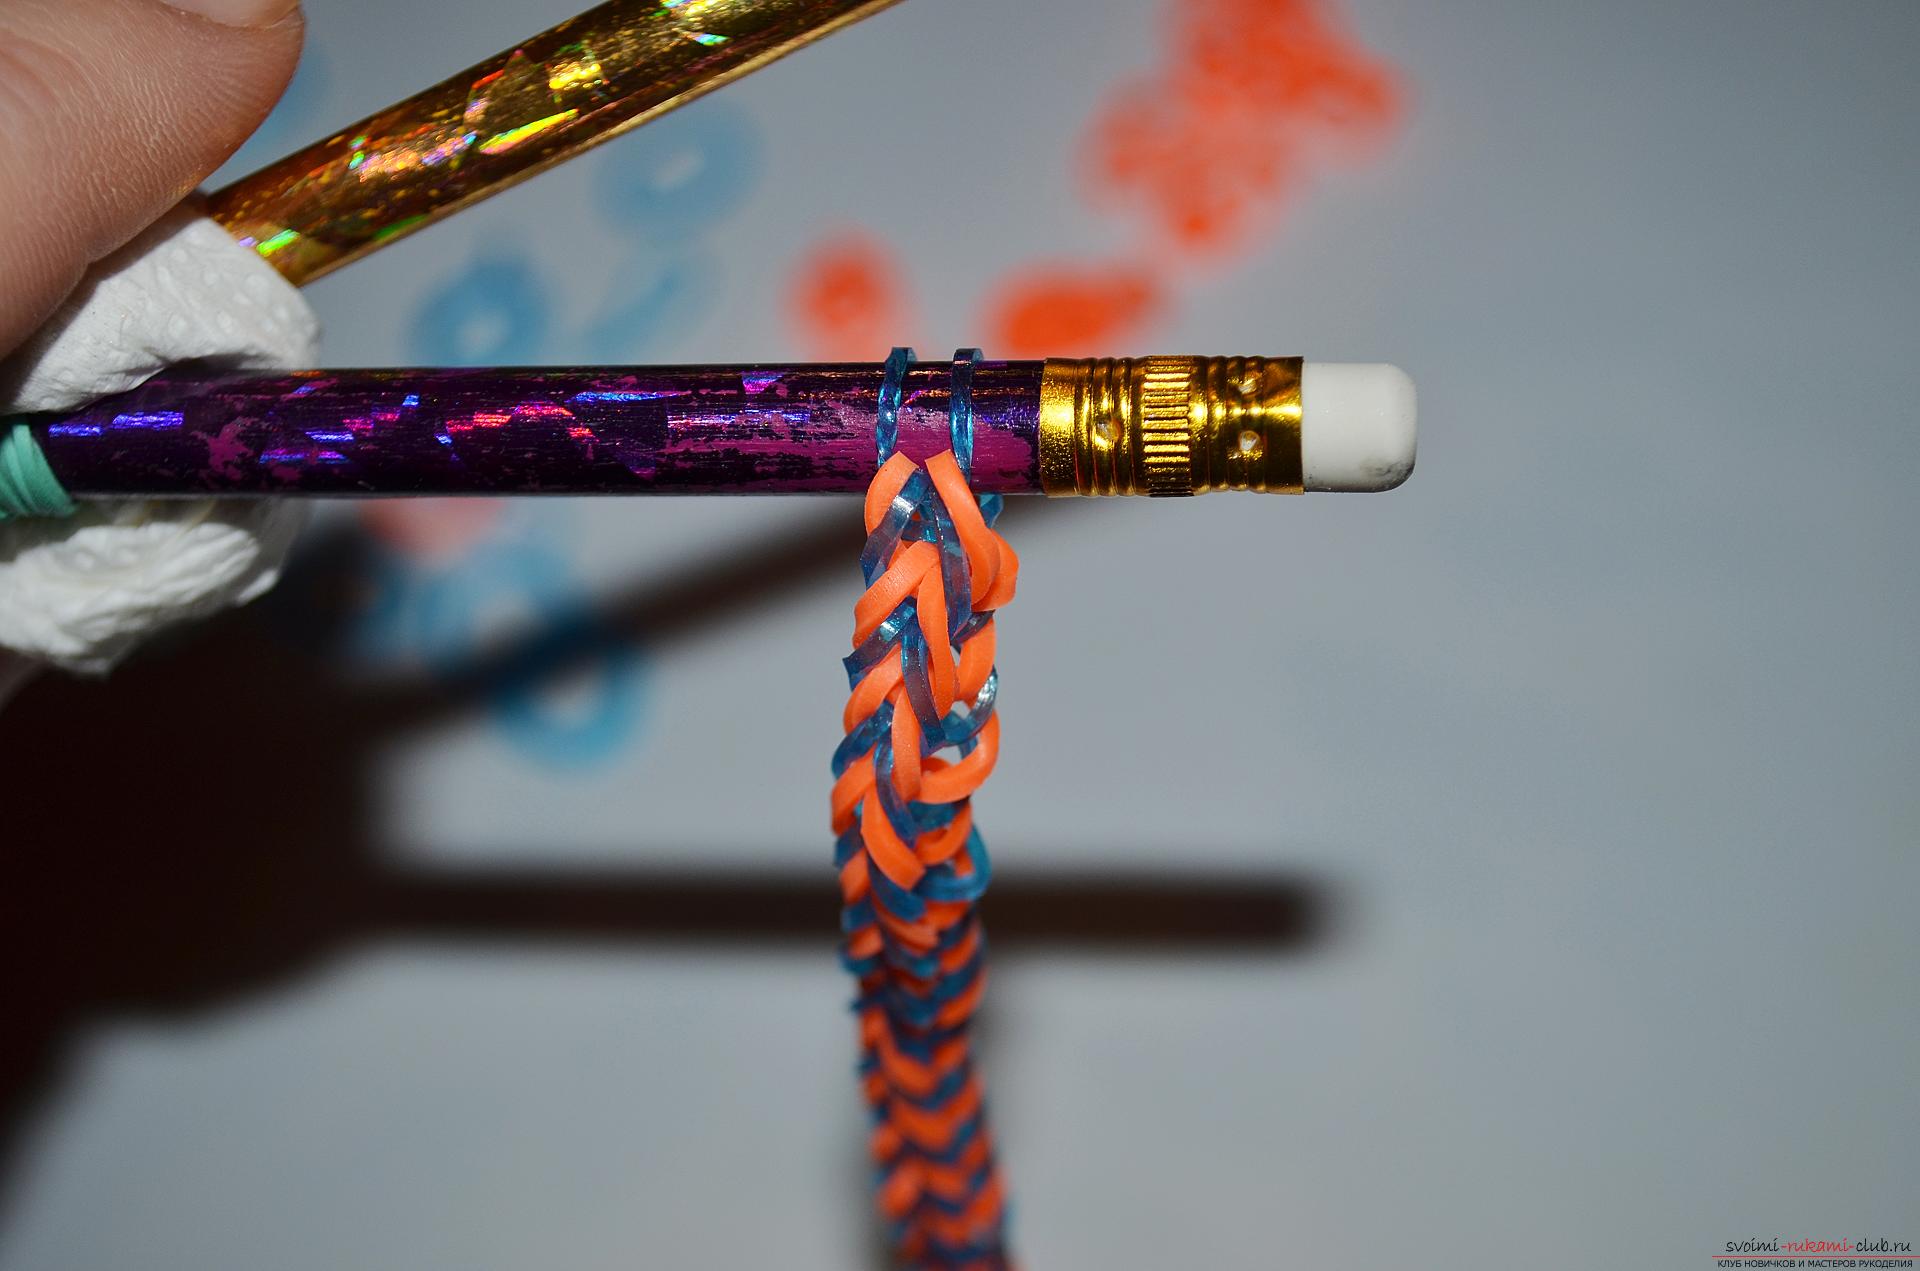 Фото к уроку по изготовлению браслета из цветных резиночек «Рыбий хвост» на карандашах. Фото №17